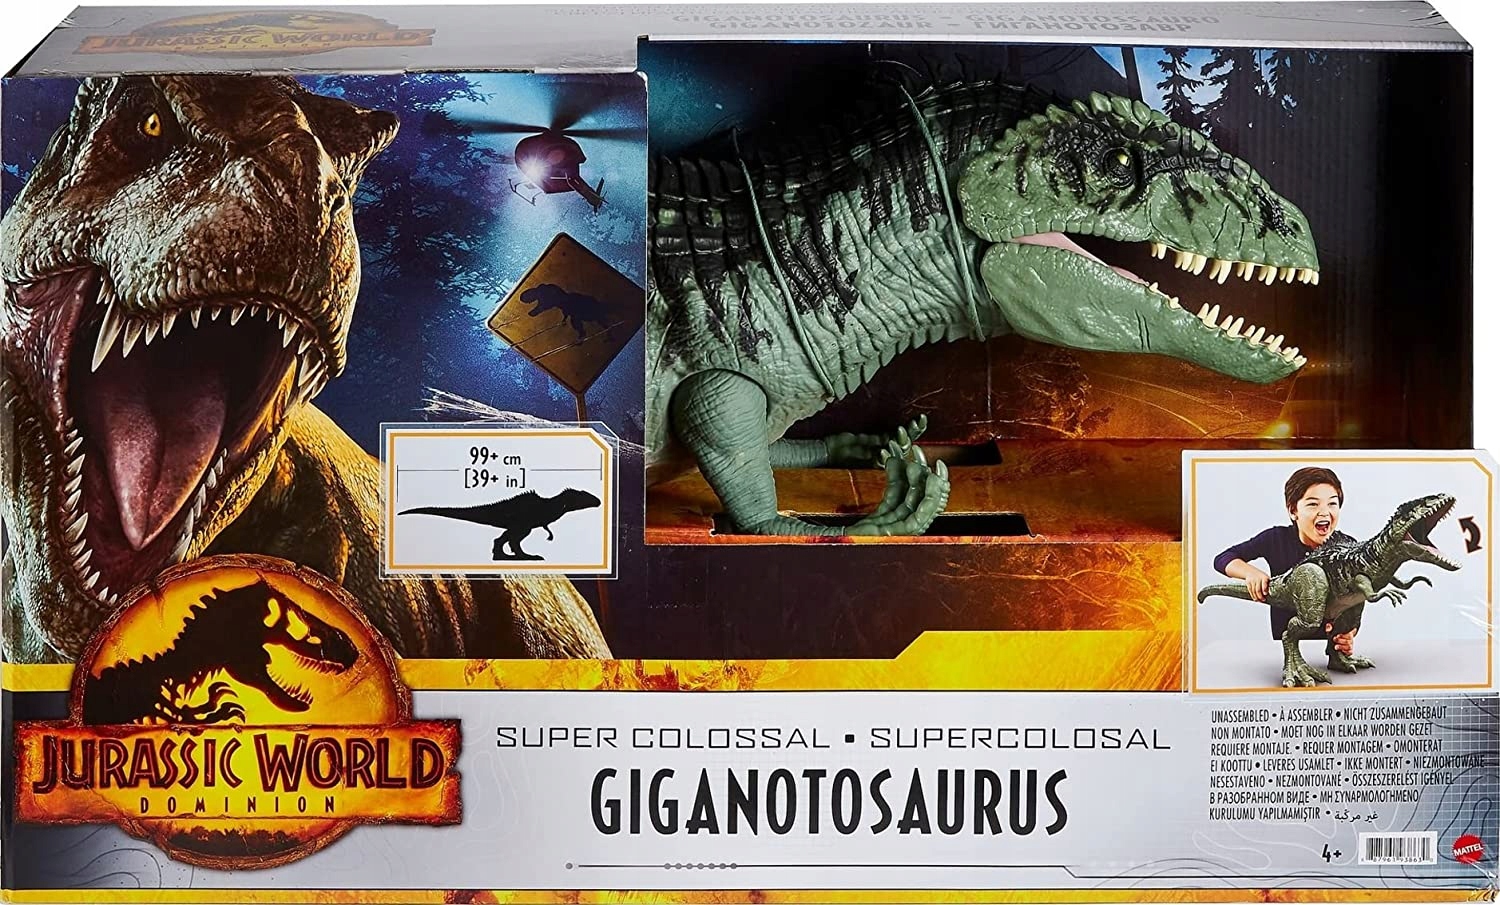 Dinosaure Giganotosaurus - Jurassic World